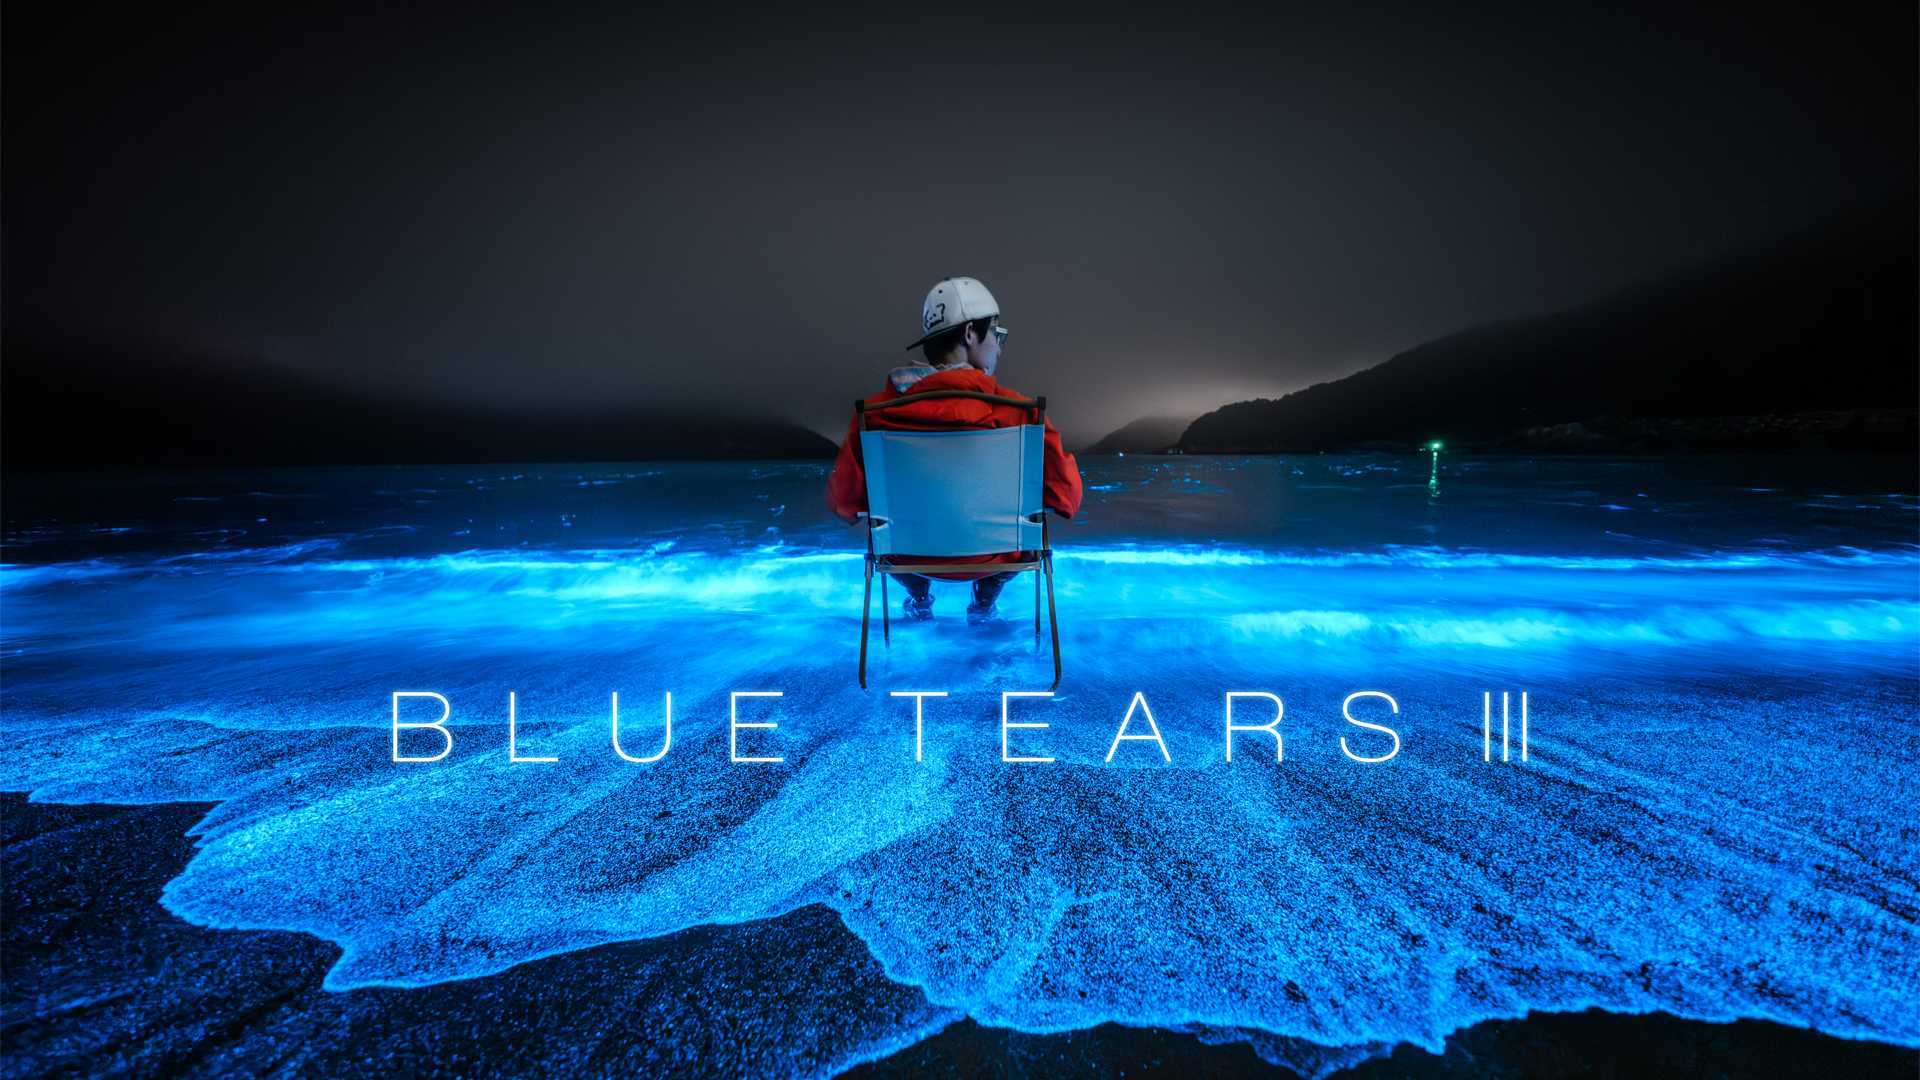 送你一片梦幻荧光海 - BLUE TEARS III，五一去平潭追“泪”吧~